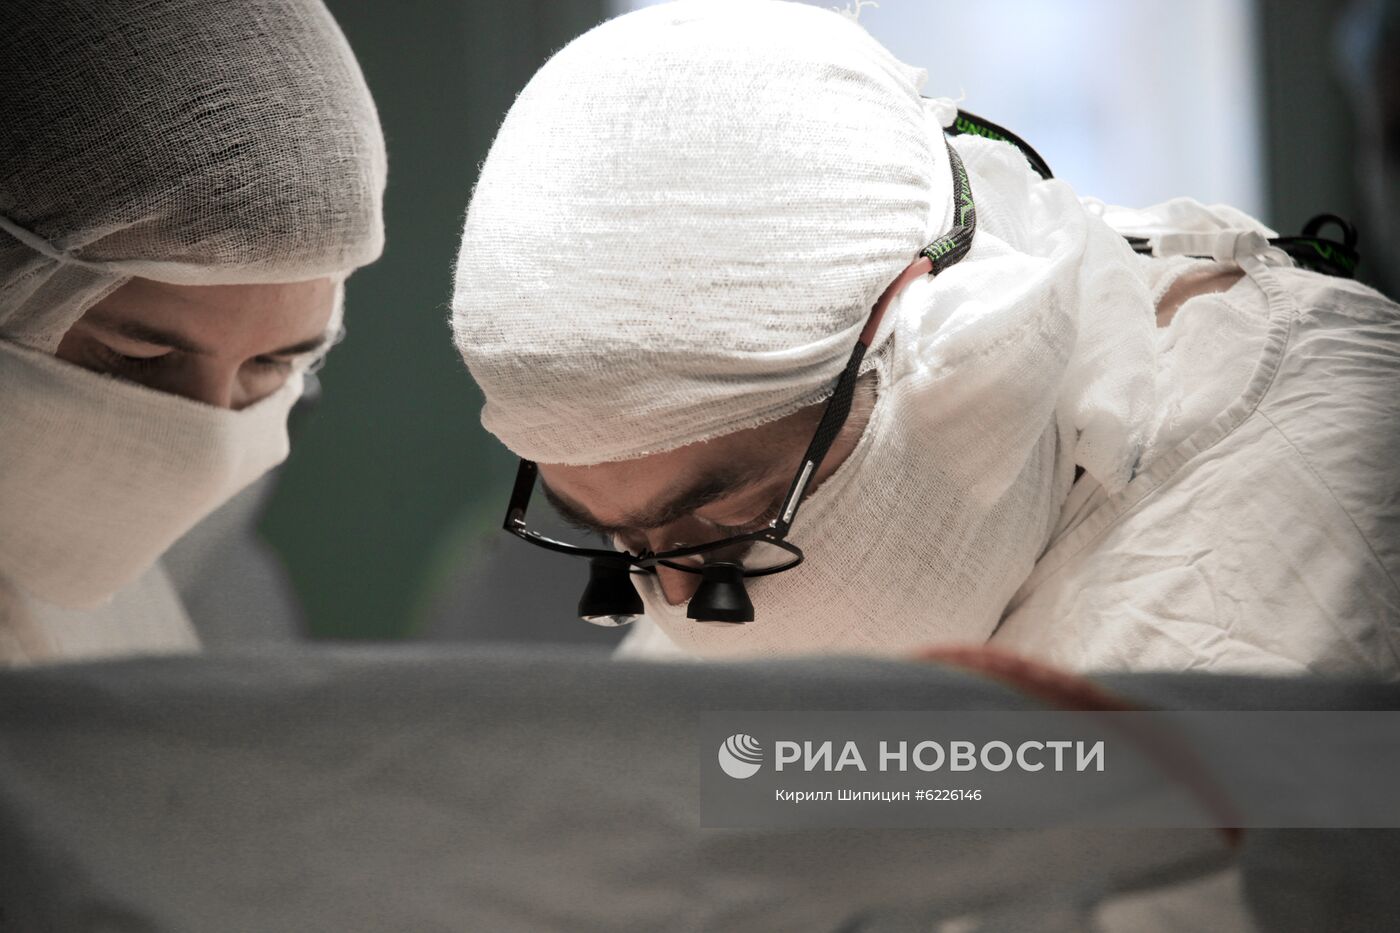 Работа областной клинической больницы в Иркутске